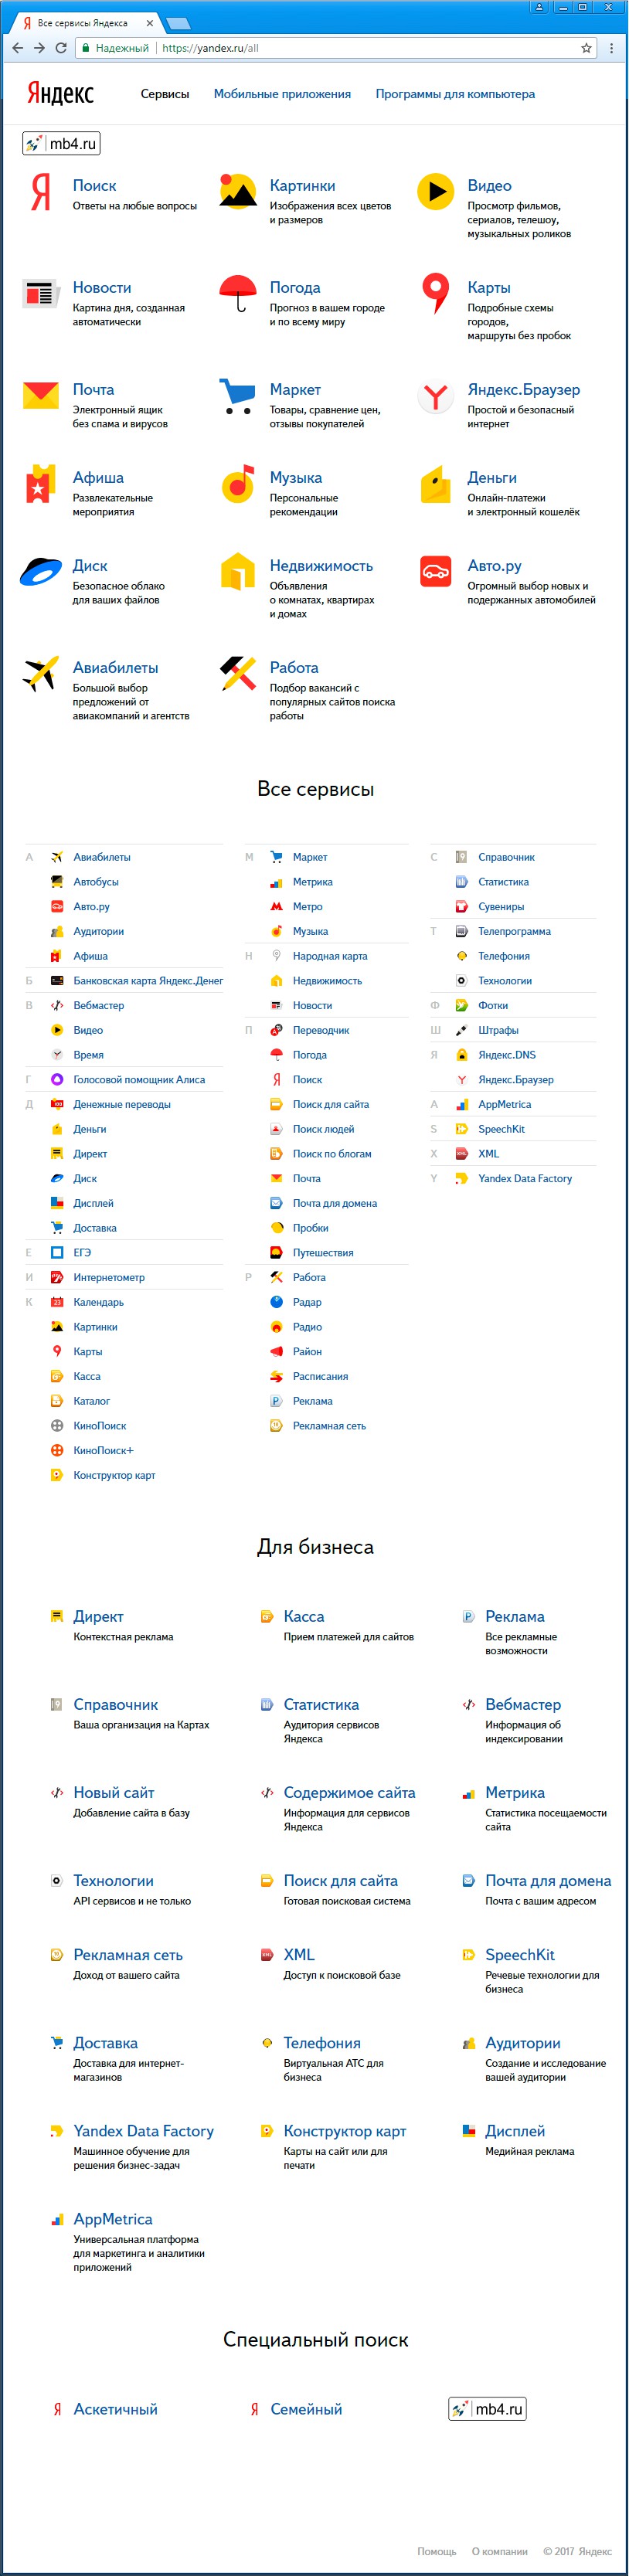 Самый длинный и полный список сервисов Яндекса